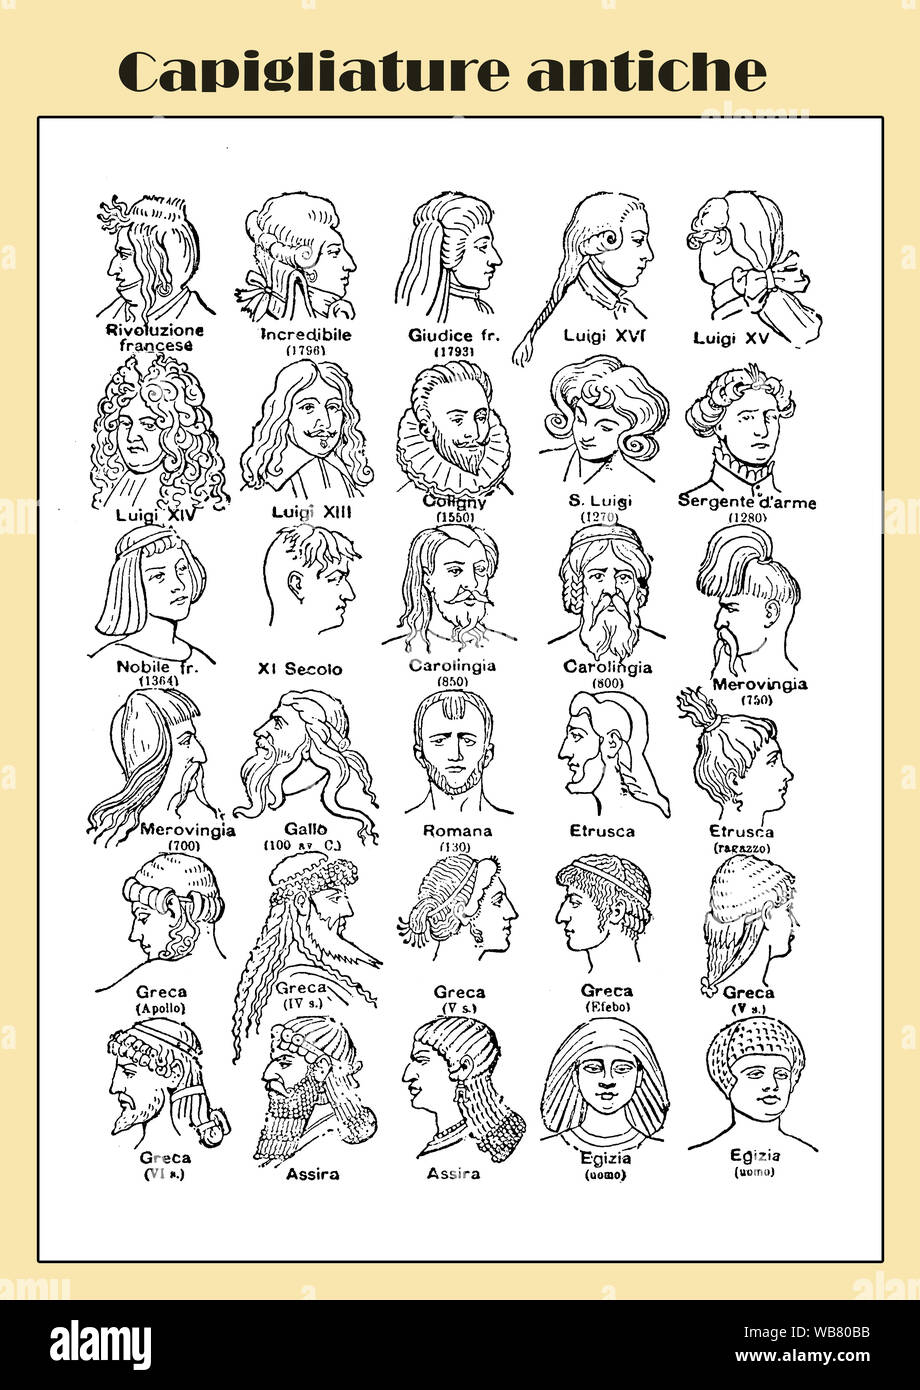 Uomo di parrucchiere: moda ed eleganza dall antichità alla rivoluzione francese, tabella illustrata Foto Stock